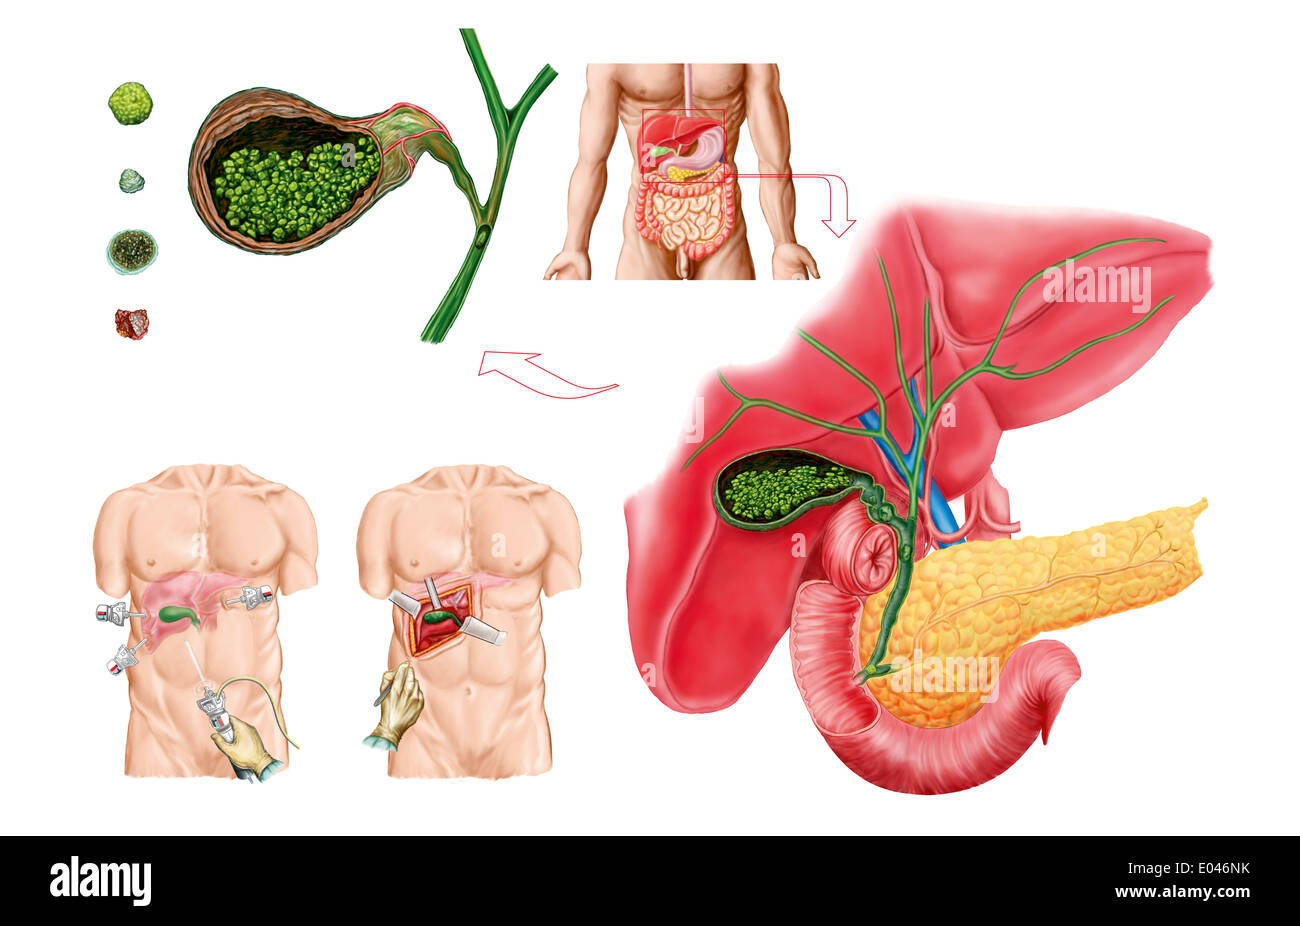 Medical illustrazione che mostra i calcoli biliari nella cistifellea e la rimozione chirurgica della cistifellea, noto come la colecistectomia. Foto Stock